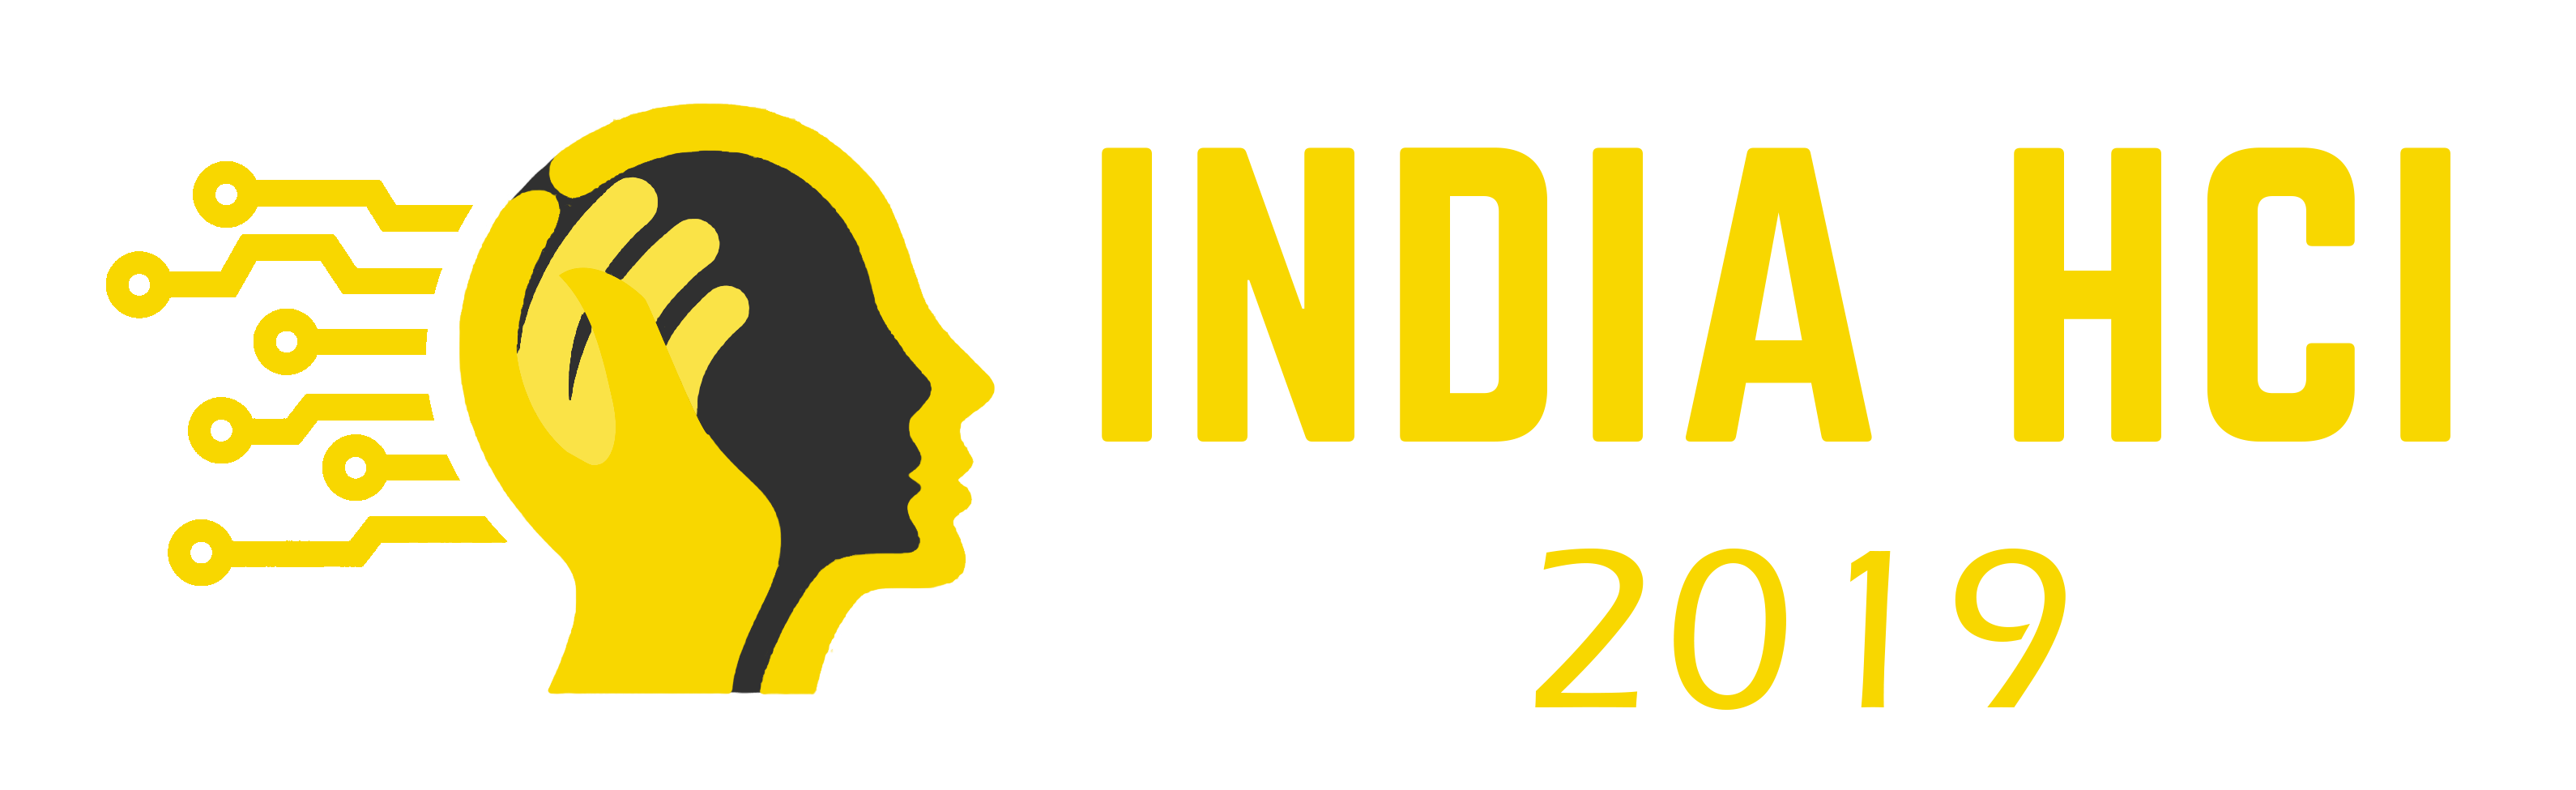 India HCI 2019 Logo